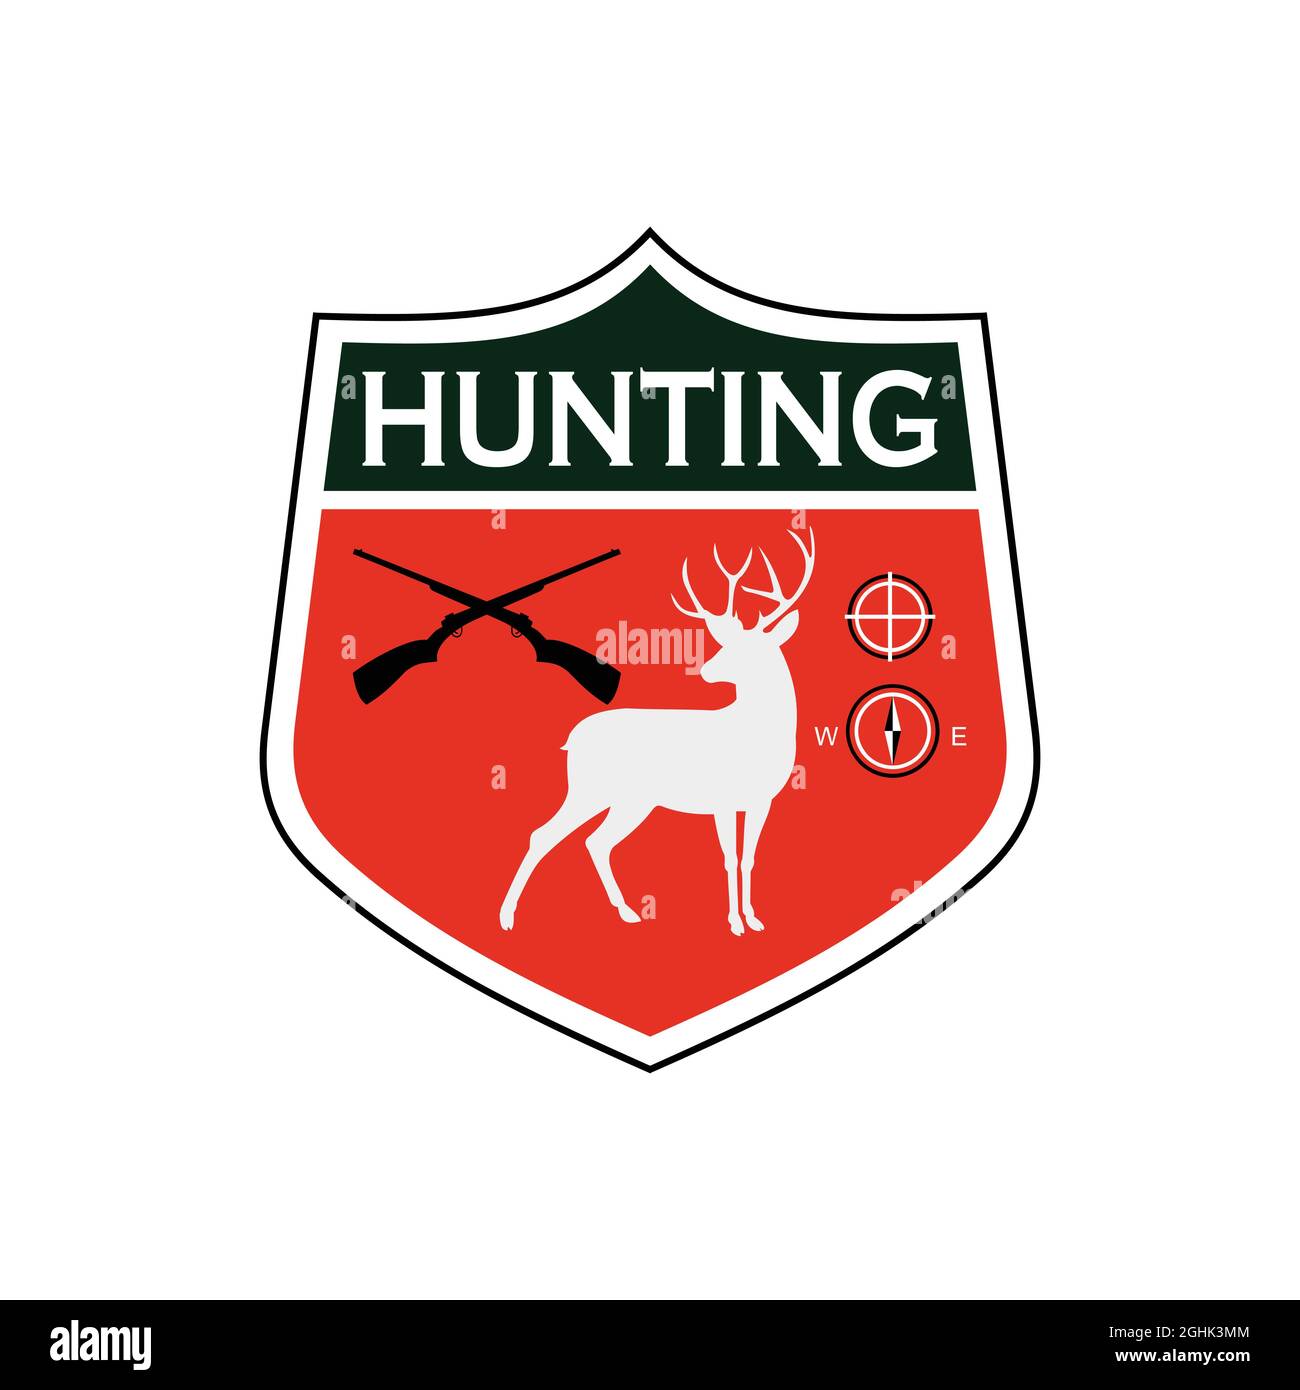 logo de la saison de chasse qui peut être personnalisé avec le nom du club selon vos besoins Illustration de Vecteur